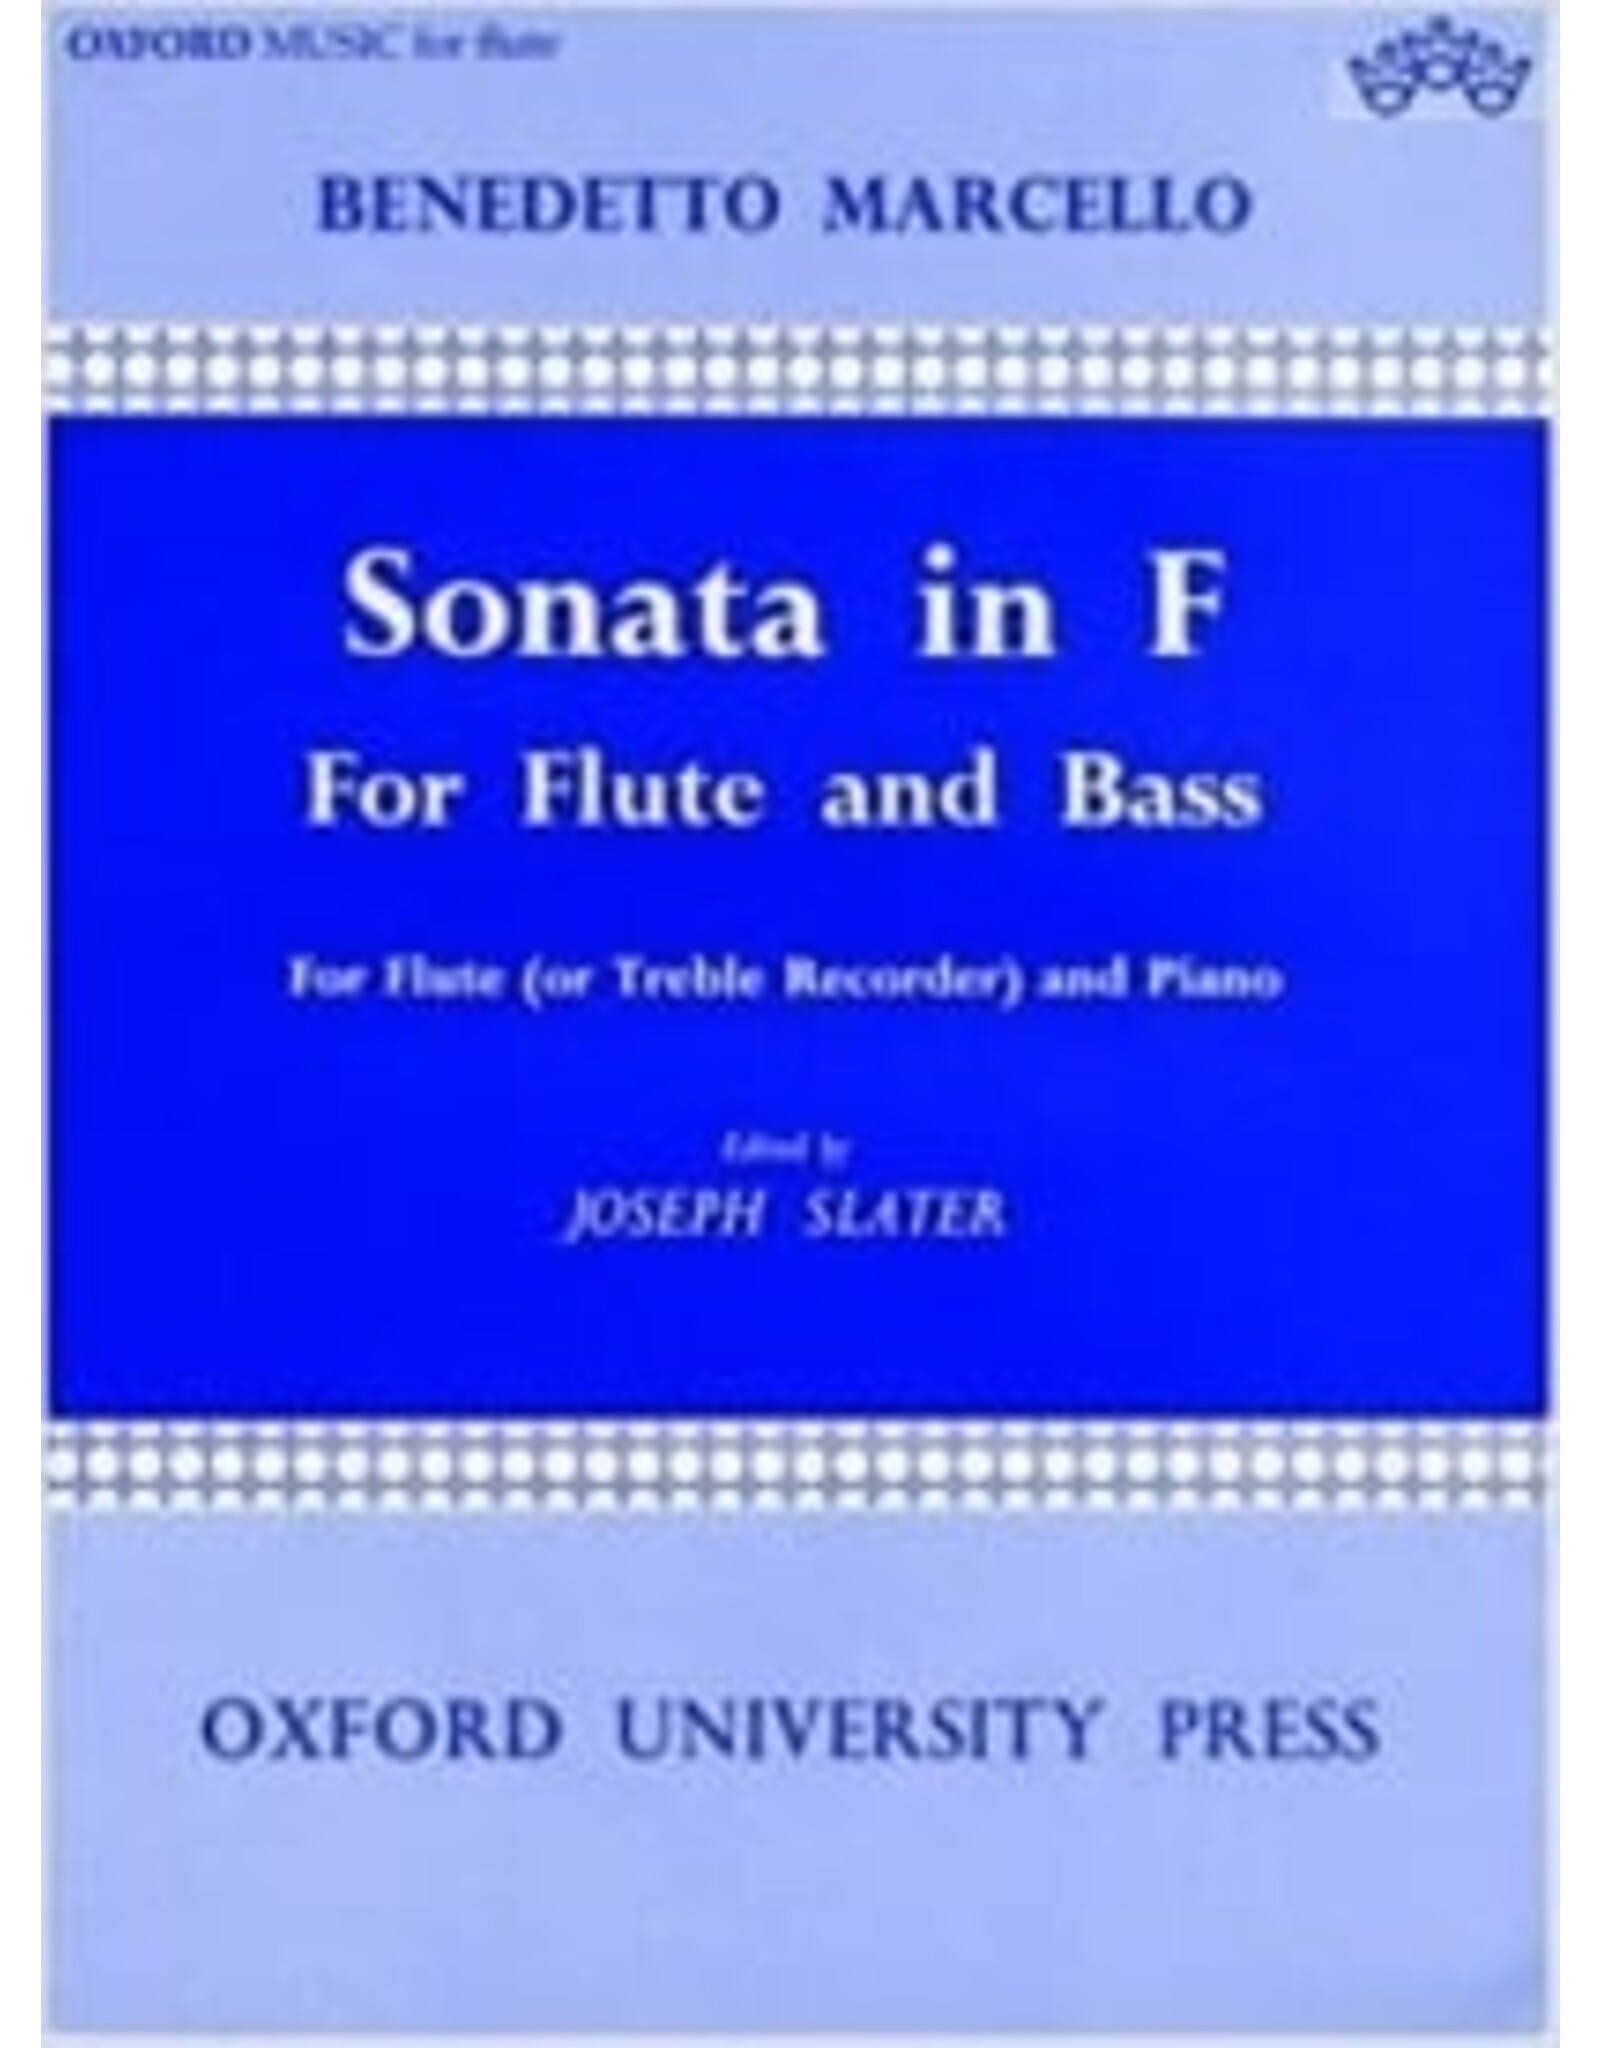 International Marcello Sonata in F - Flute and Piano